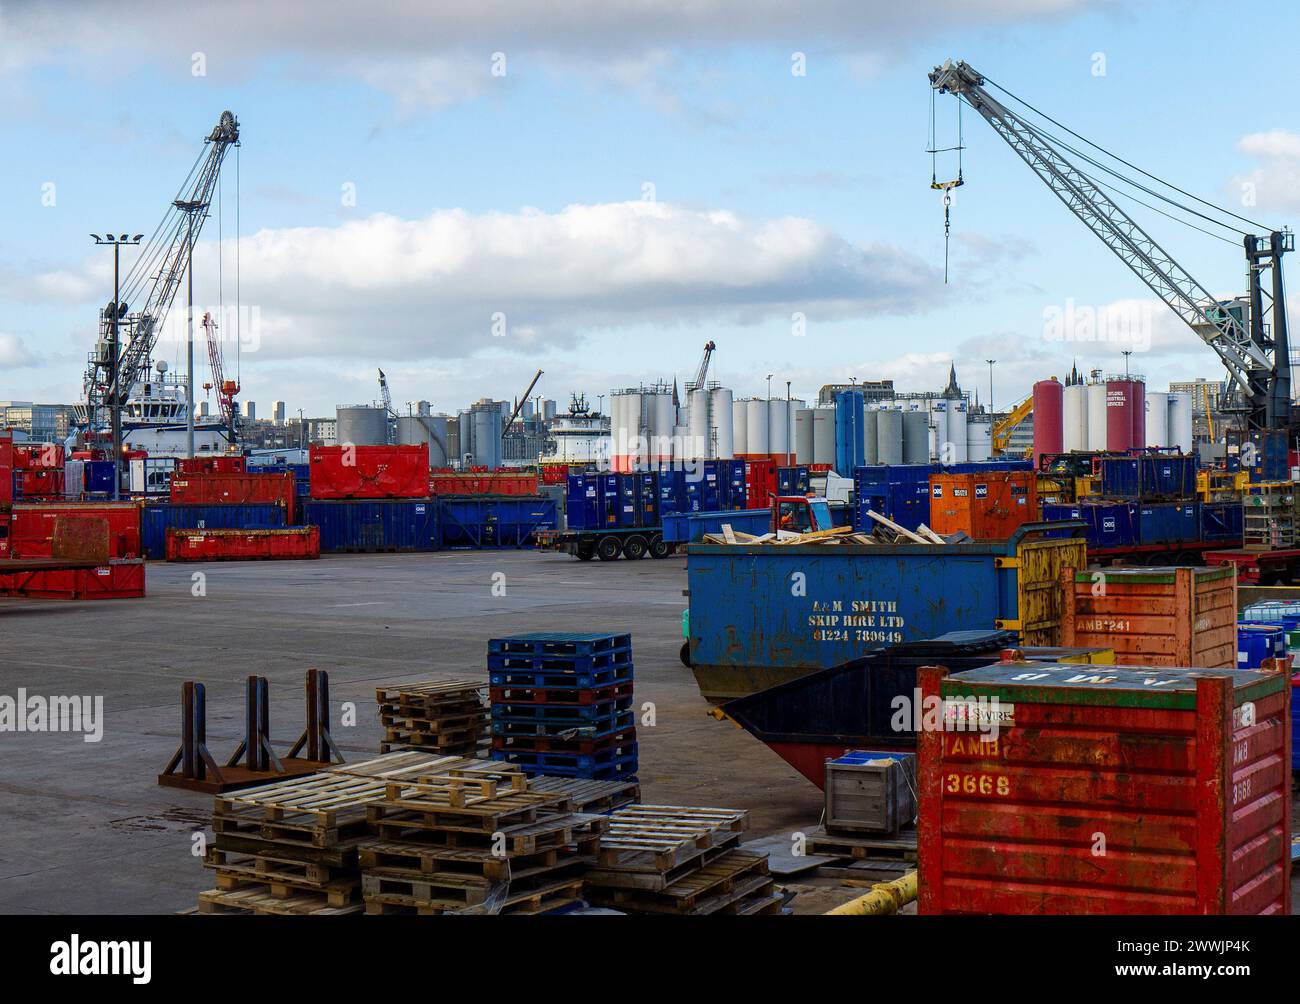 Port of Aberdeen (Aberdeen Harbour) seen from Sinclair Road, Torry, Aberdeen, Aberdeenshire, Scotland,UK Stock Photo